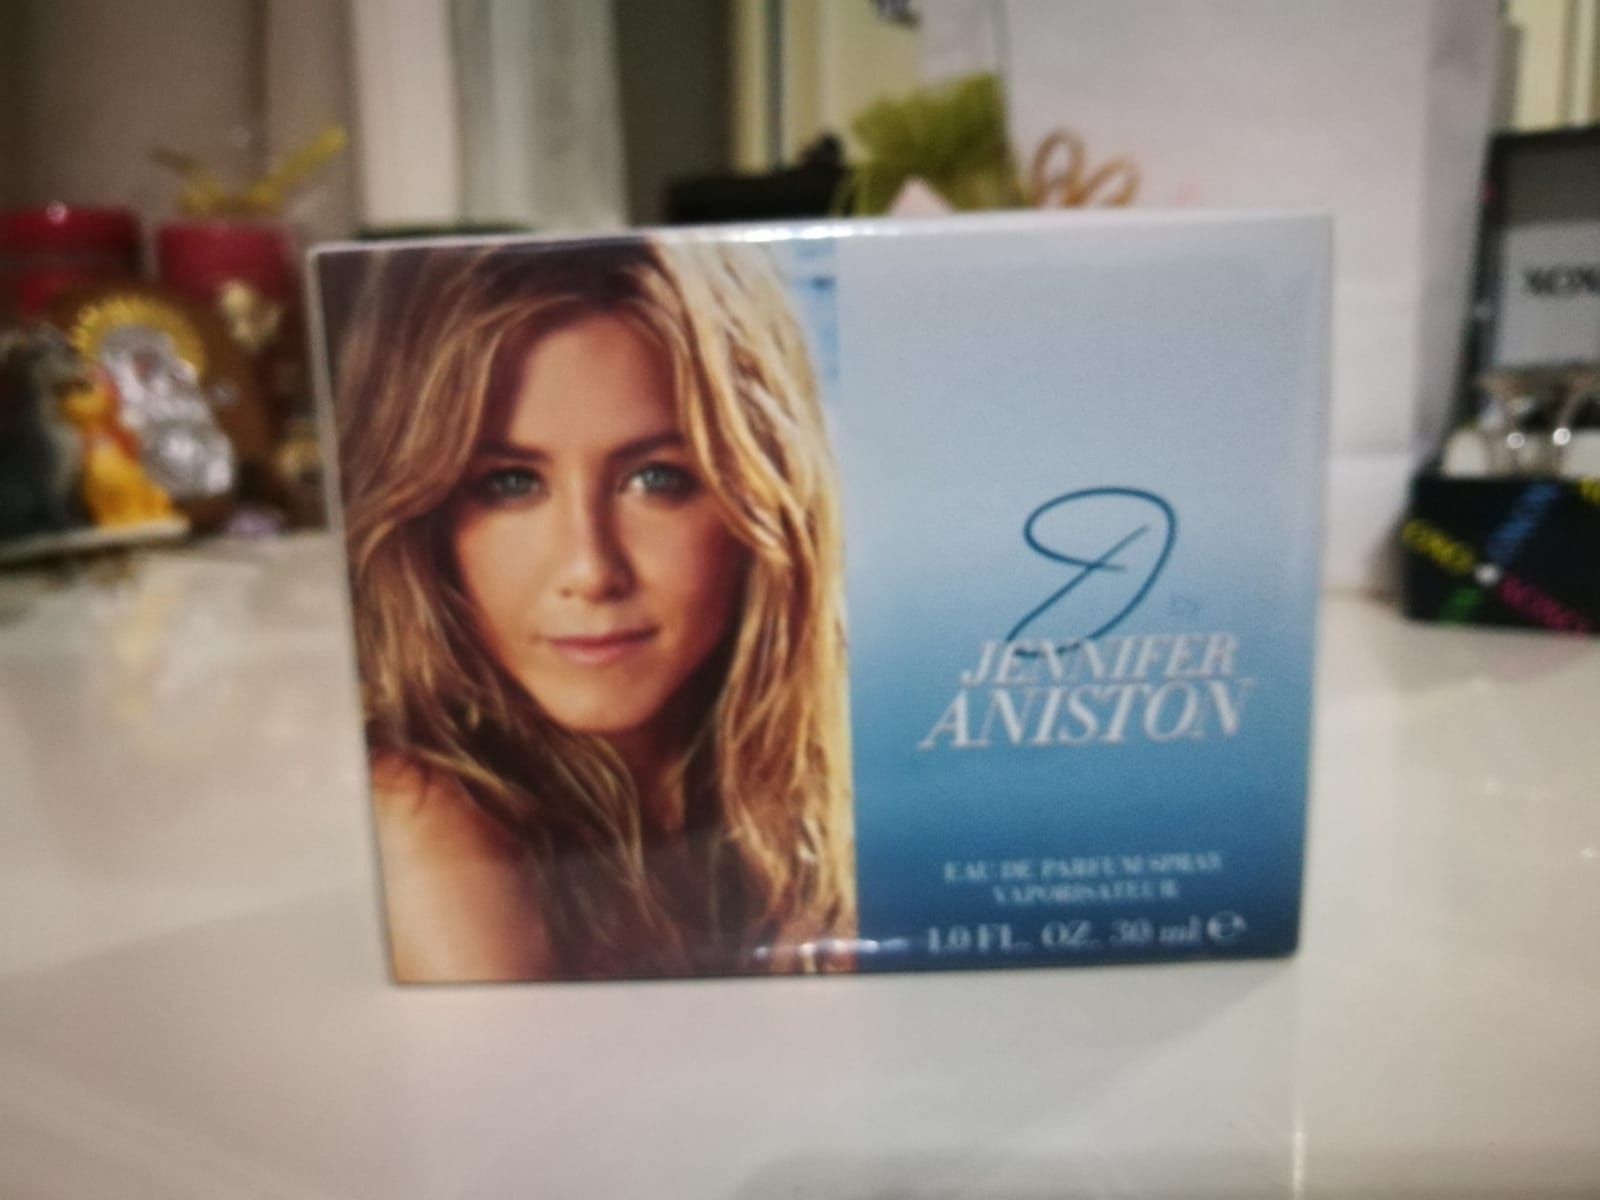 Apa de Parfum Jeniffer Aniston, (sigilata, perfectă pt un cadou)